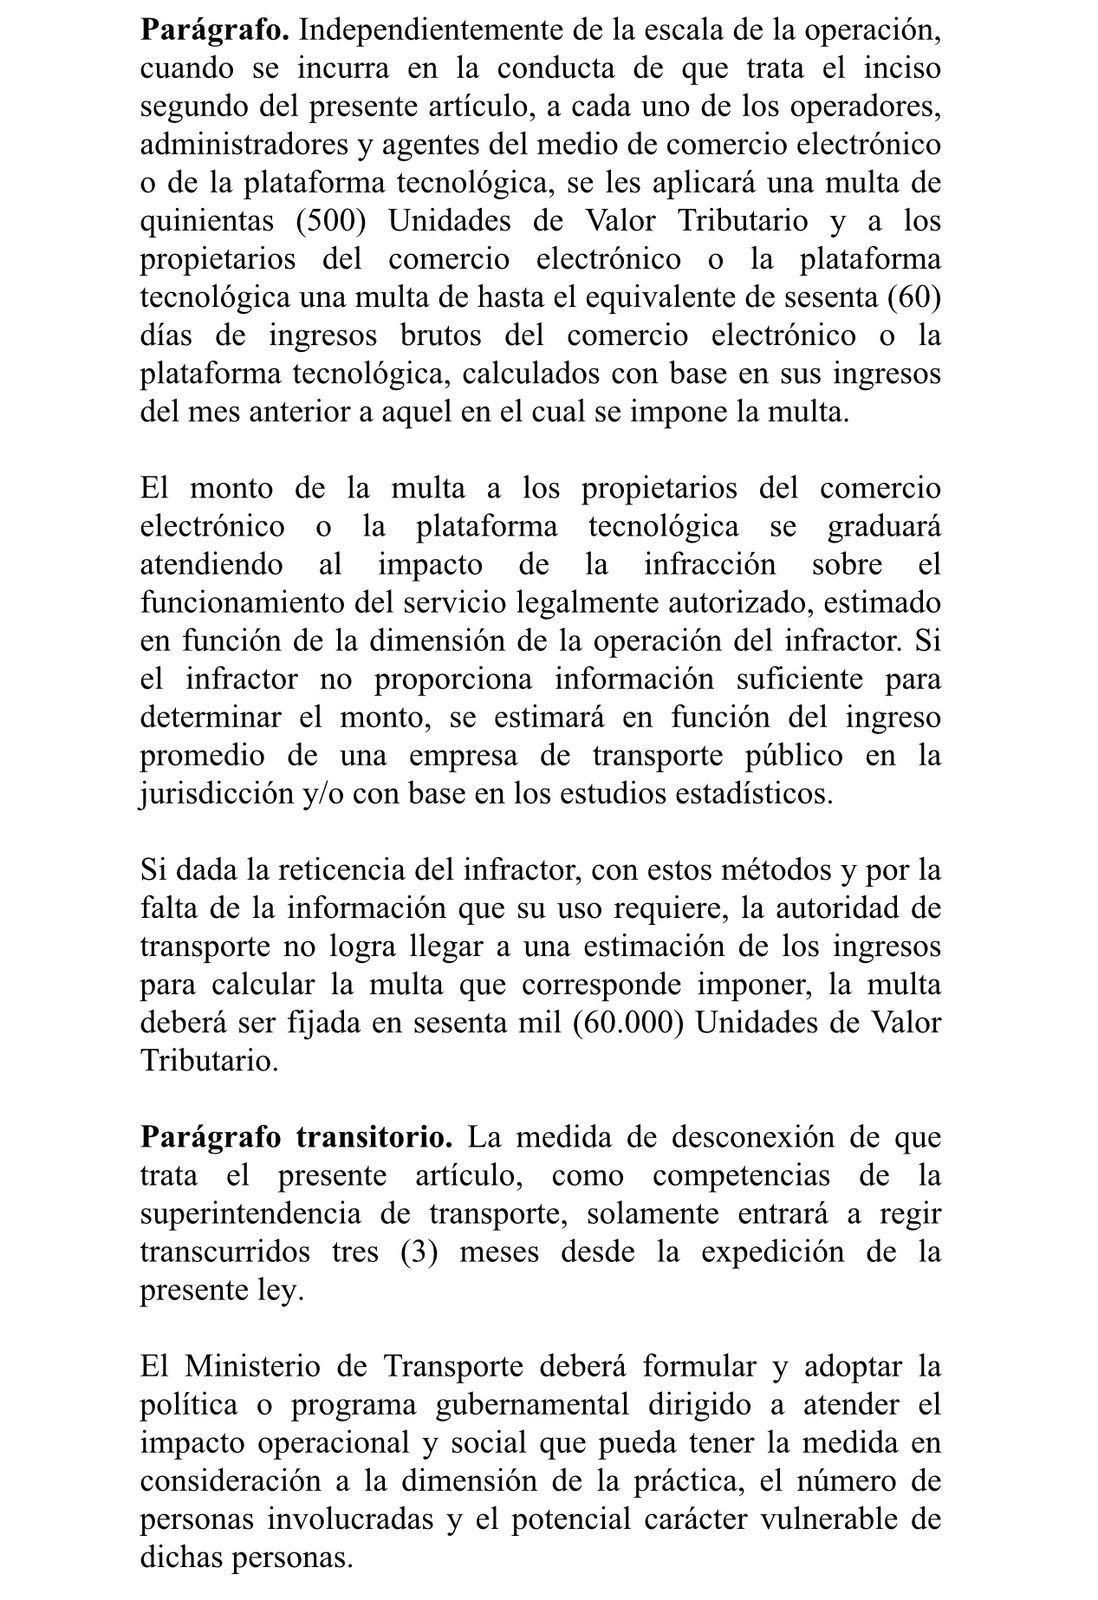 Fragmento del borrador del proyecto de ley sobre la regulación de las plataformas de transporte.